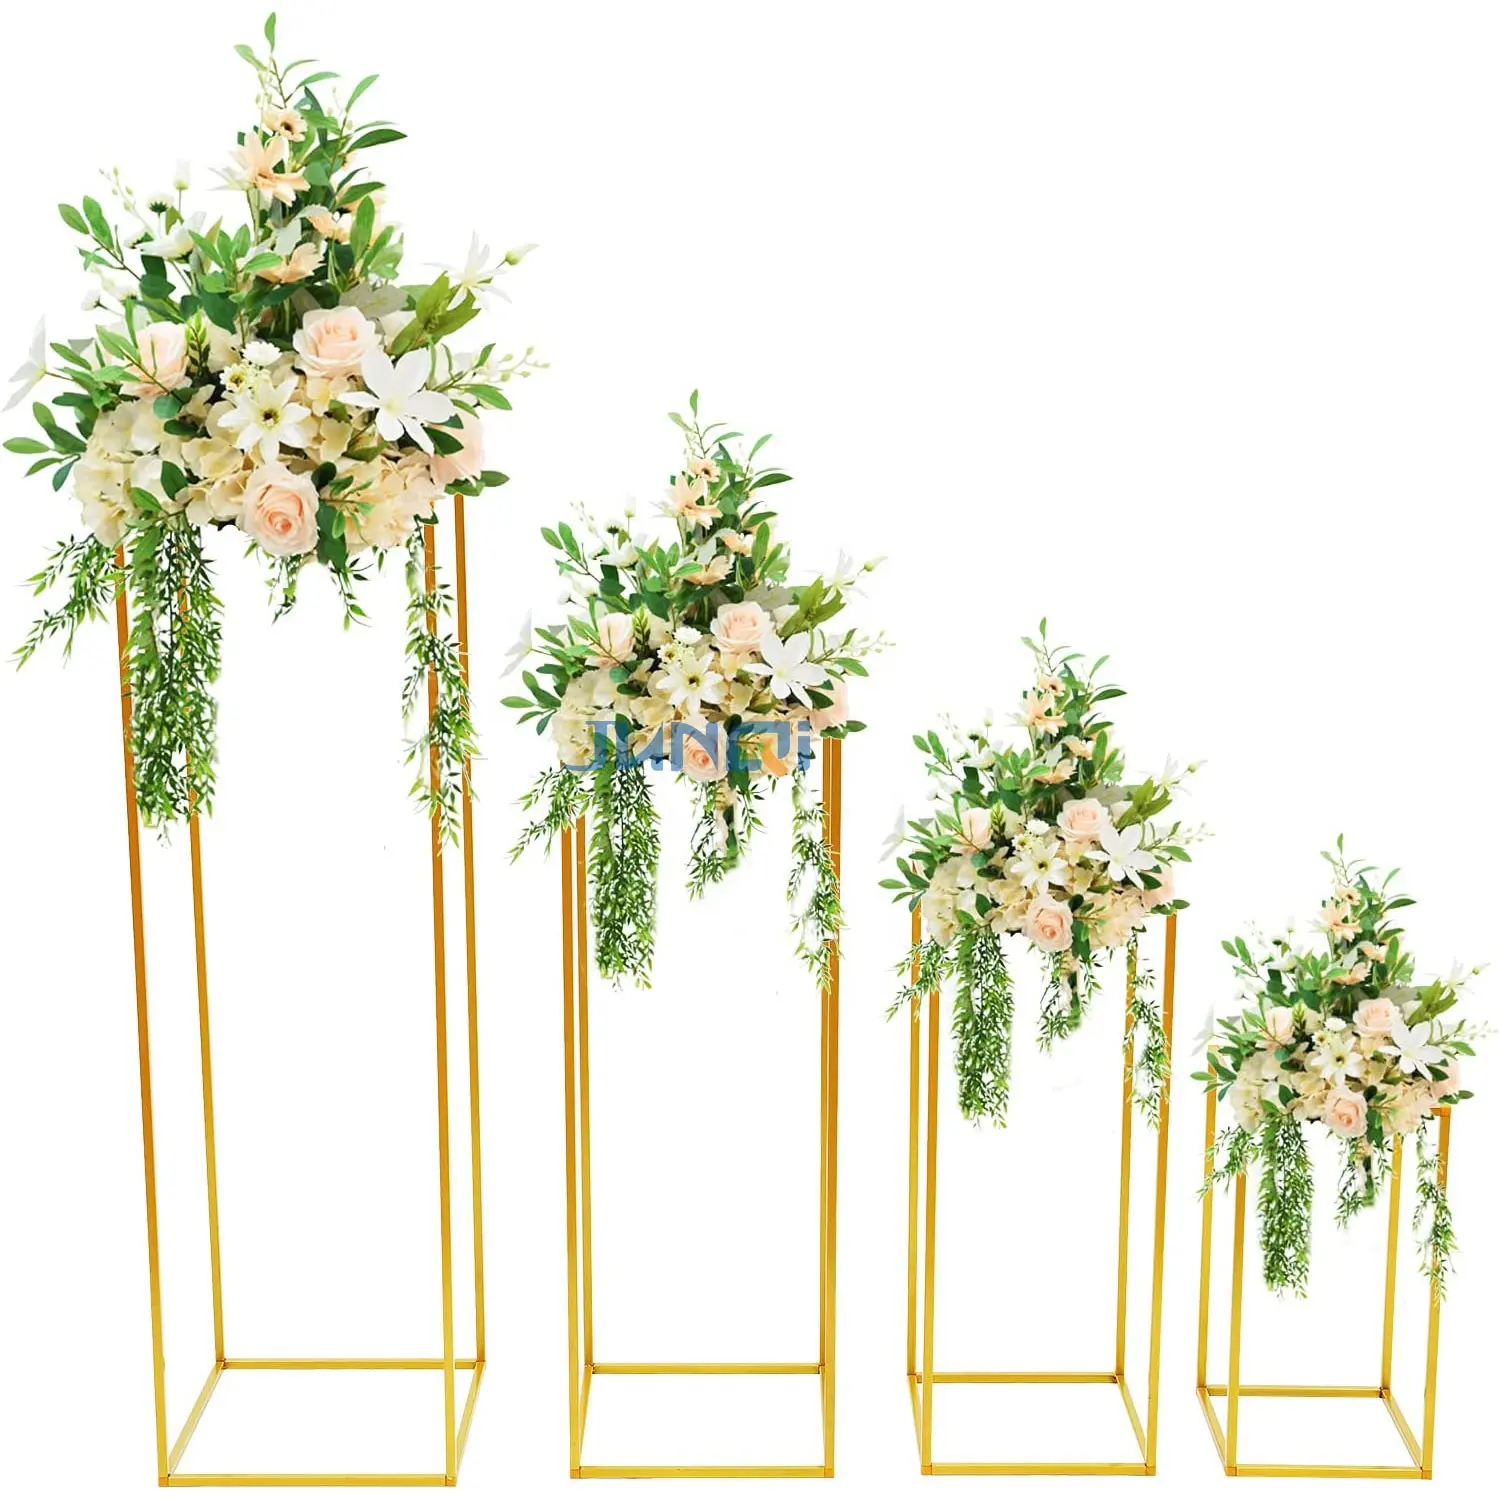 Lüks kristal çiçek standı düğün Centerpieces kat boyunda Metal çiçek düzenleme standı masa çiçek vazo